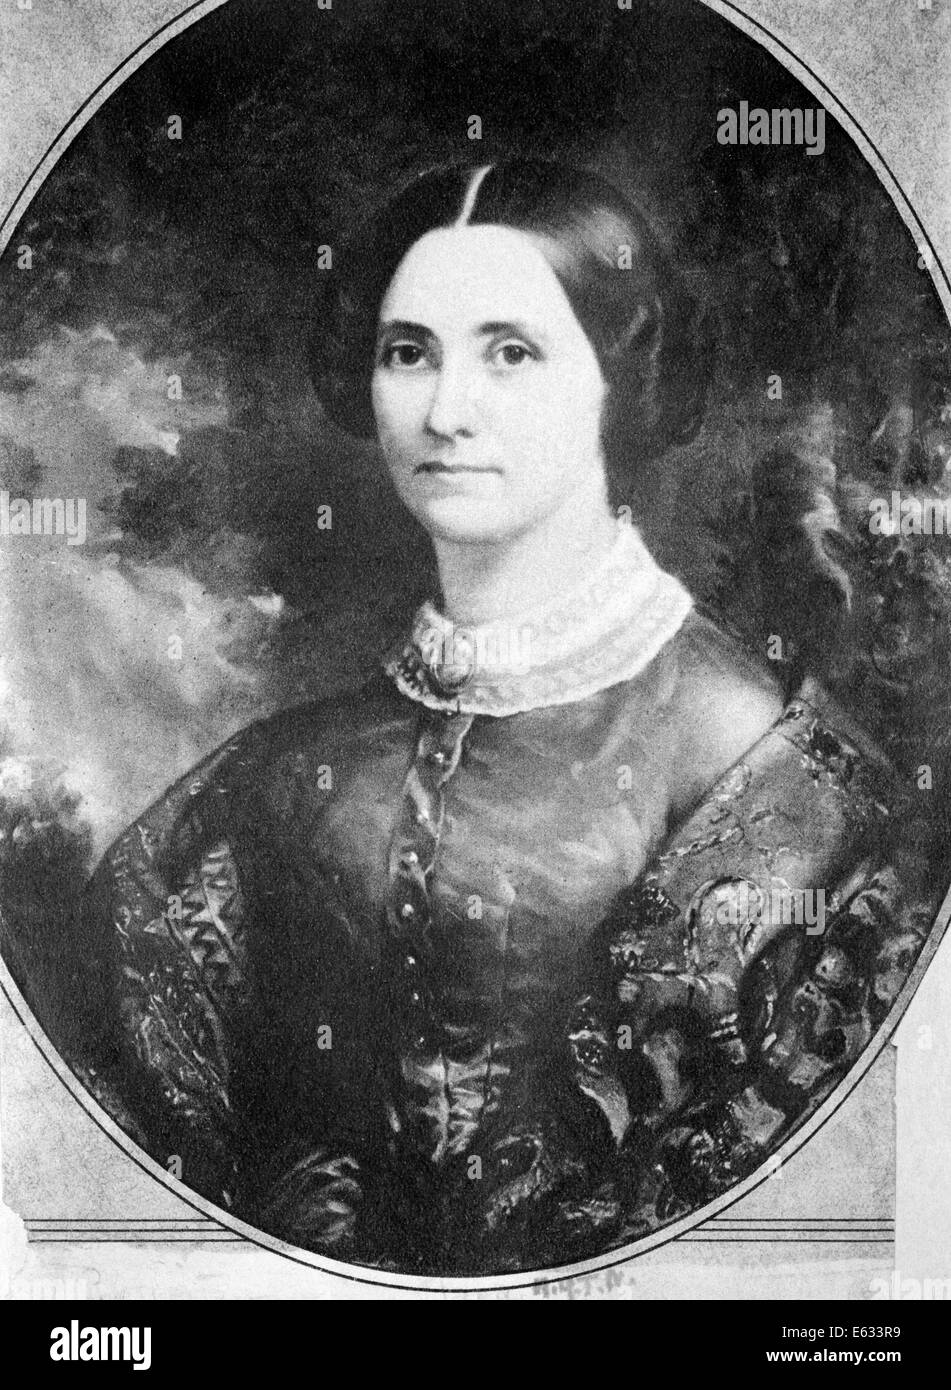 Années 1800 Années 1840 1844 PORTRAIT Clara Barton à l'âge de 23 ORGANISATEUR DE LA Croix-rouge AMÉRICAINE GUERRE CIVILE ET HUMANITAIRE INFIRMIER ENSEIGNANT Banque D'Images